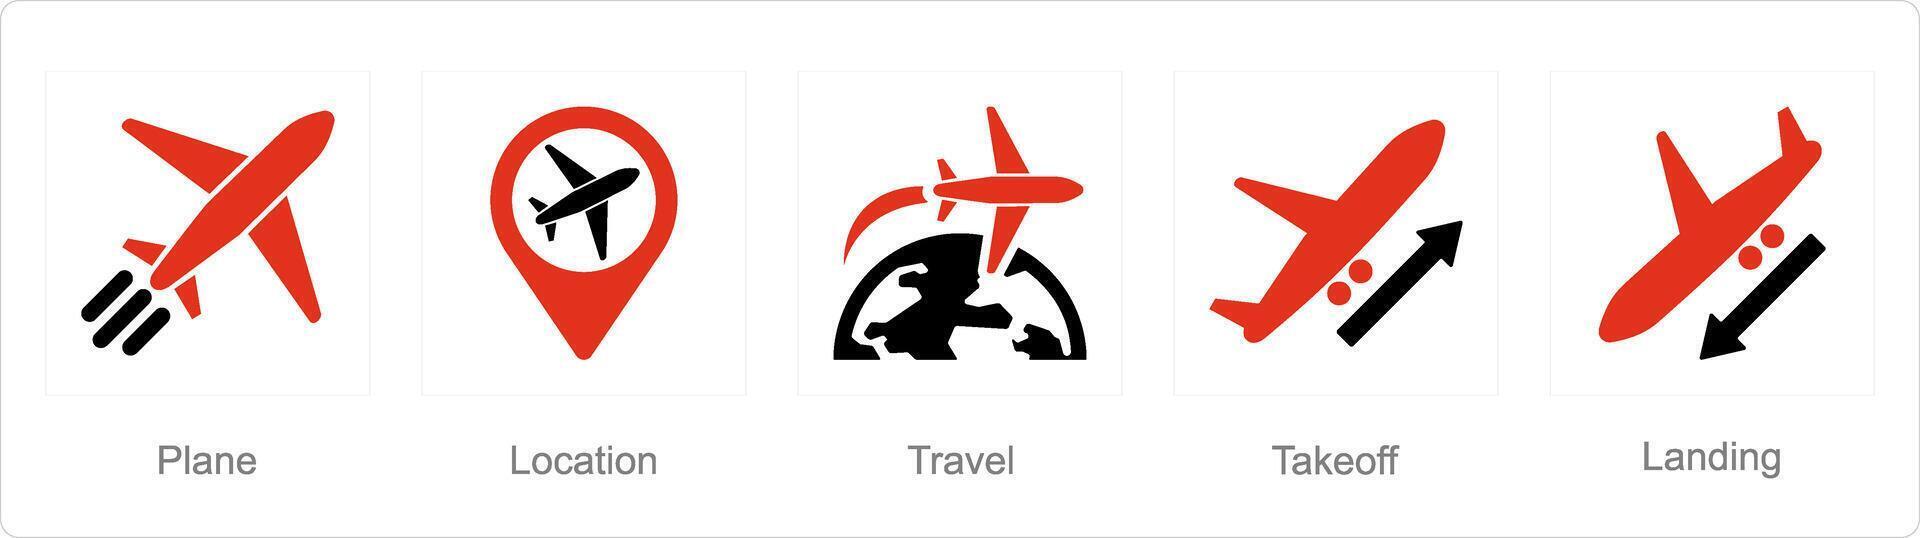 uma conjunto do 5 aeroporto ícones Como avião, localização, viagem vetor